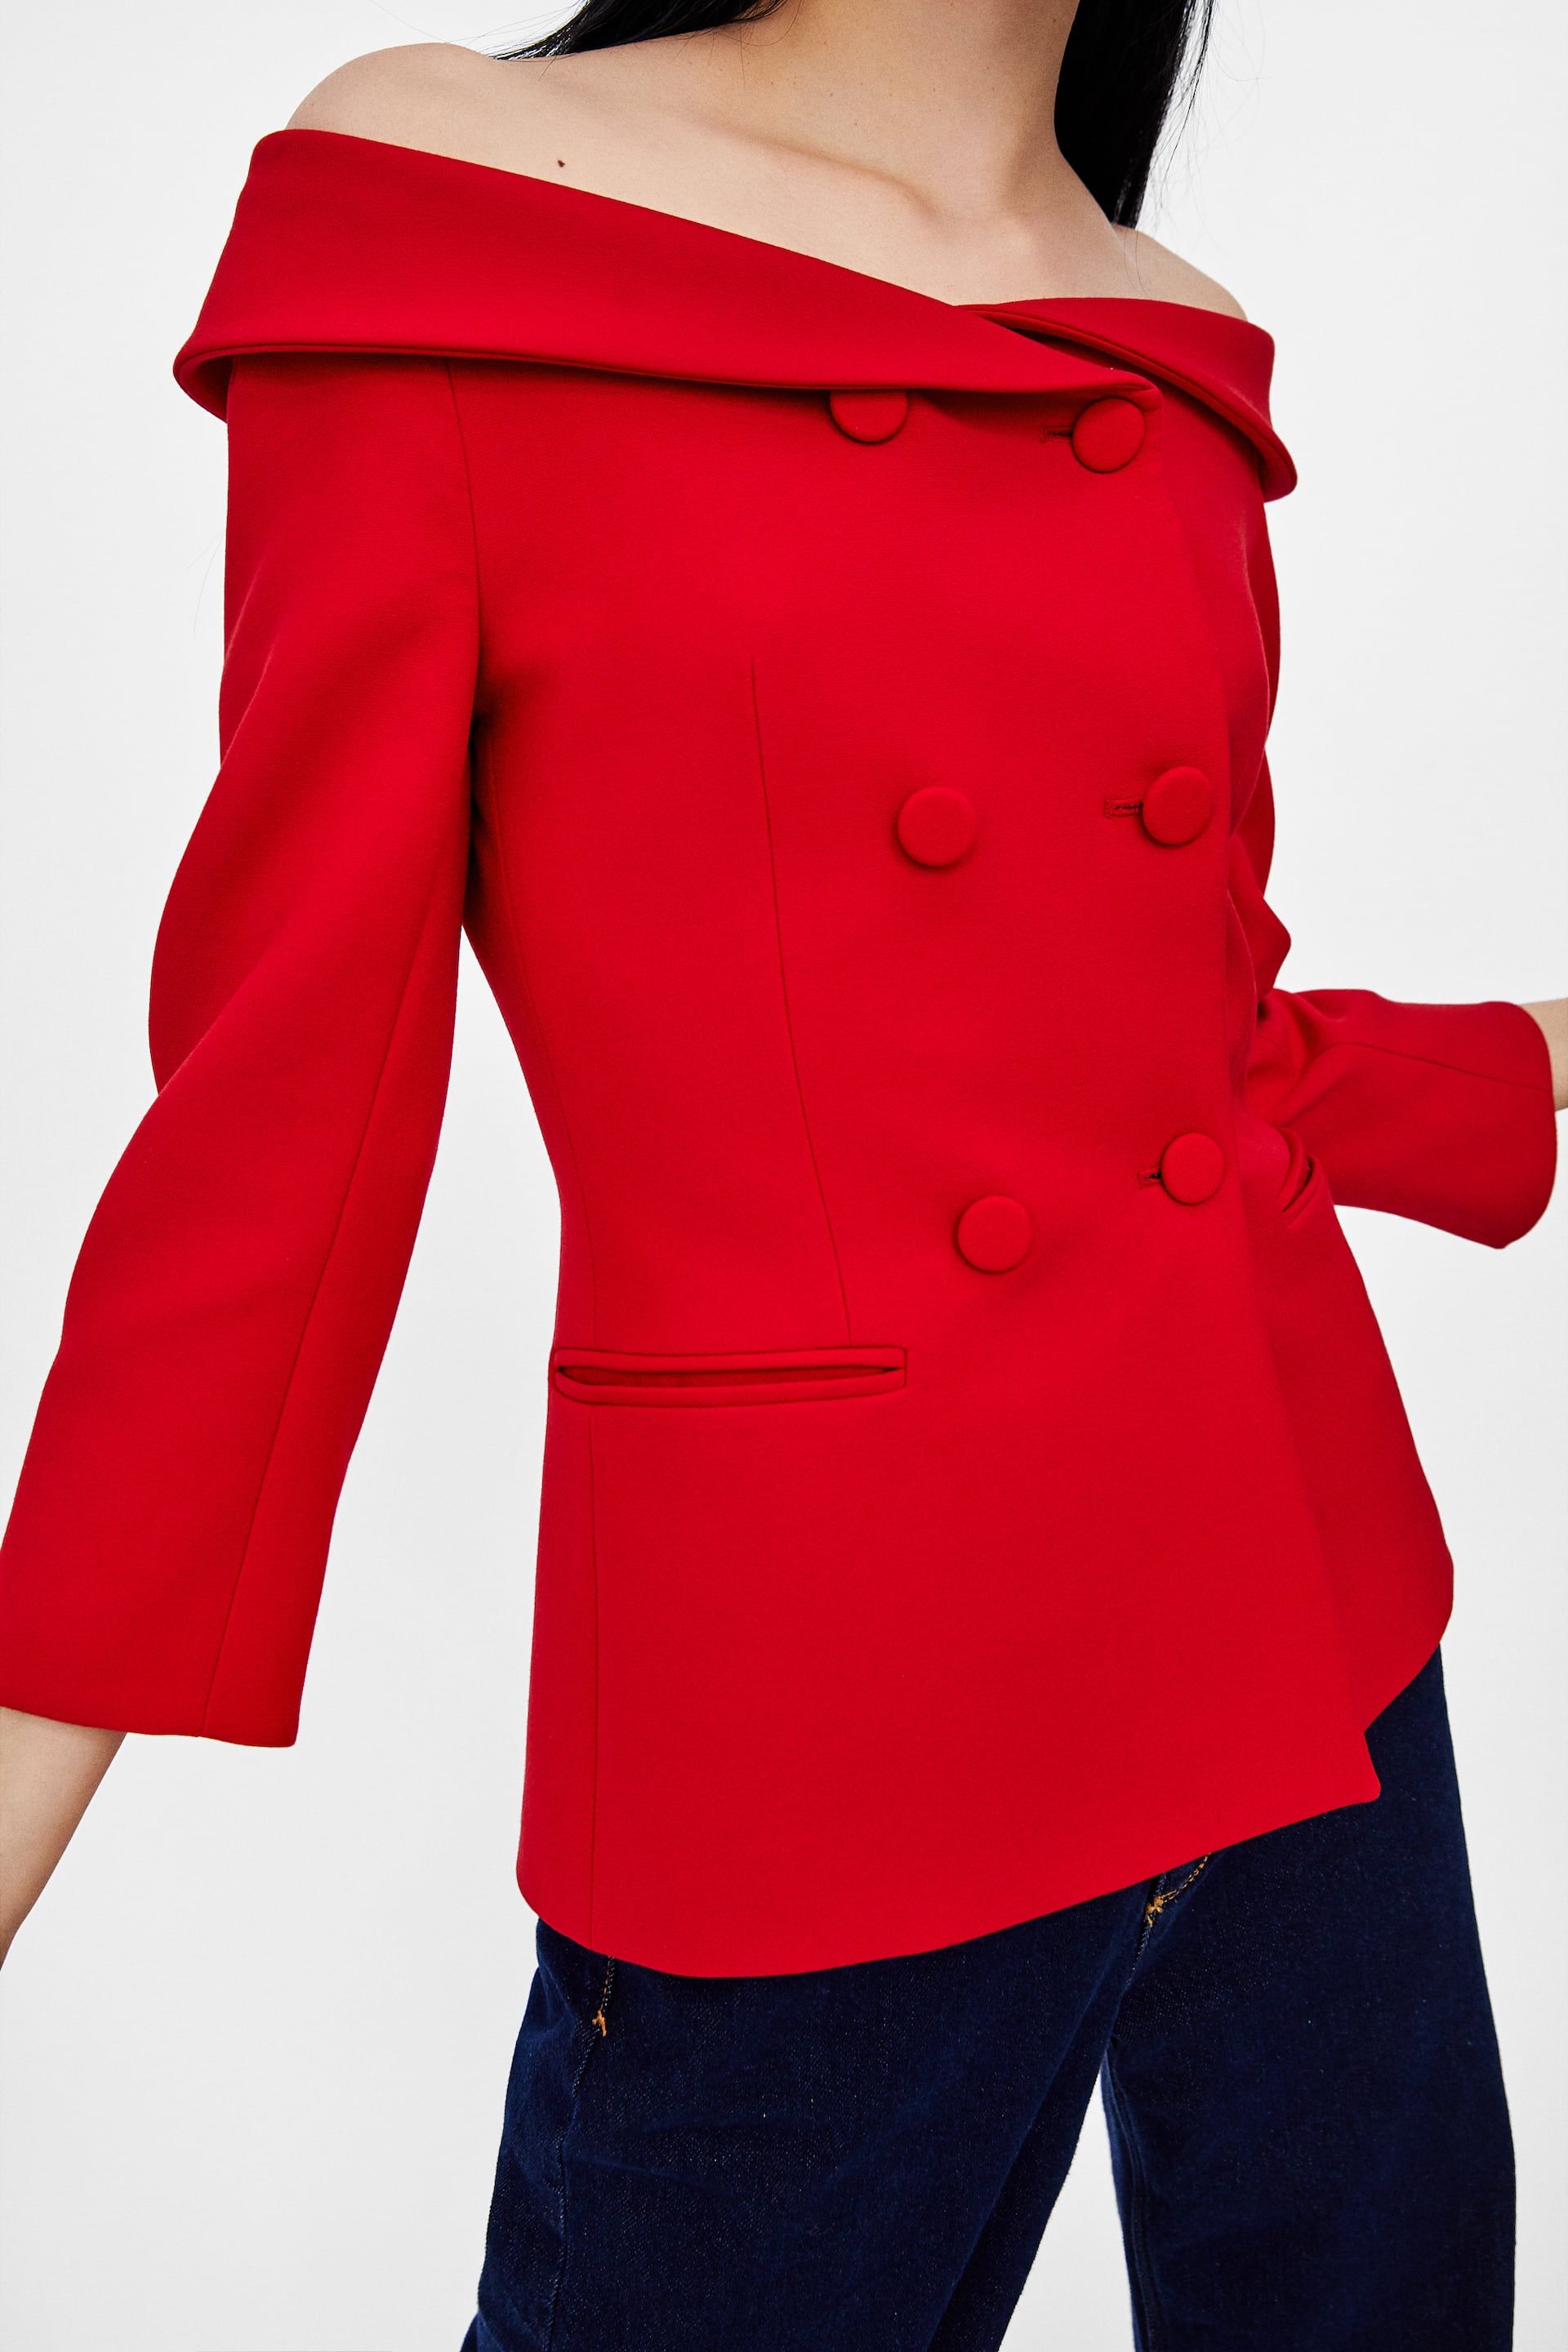 red blazer zara woman